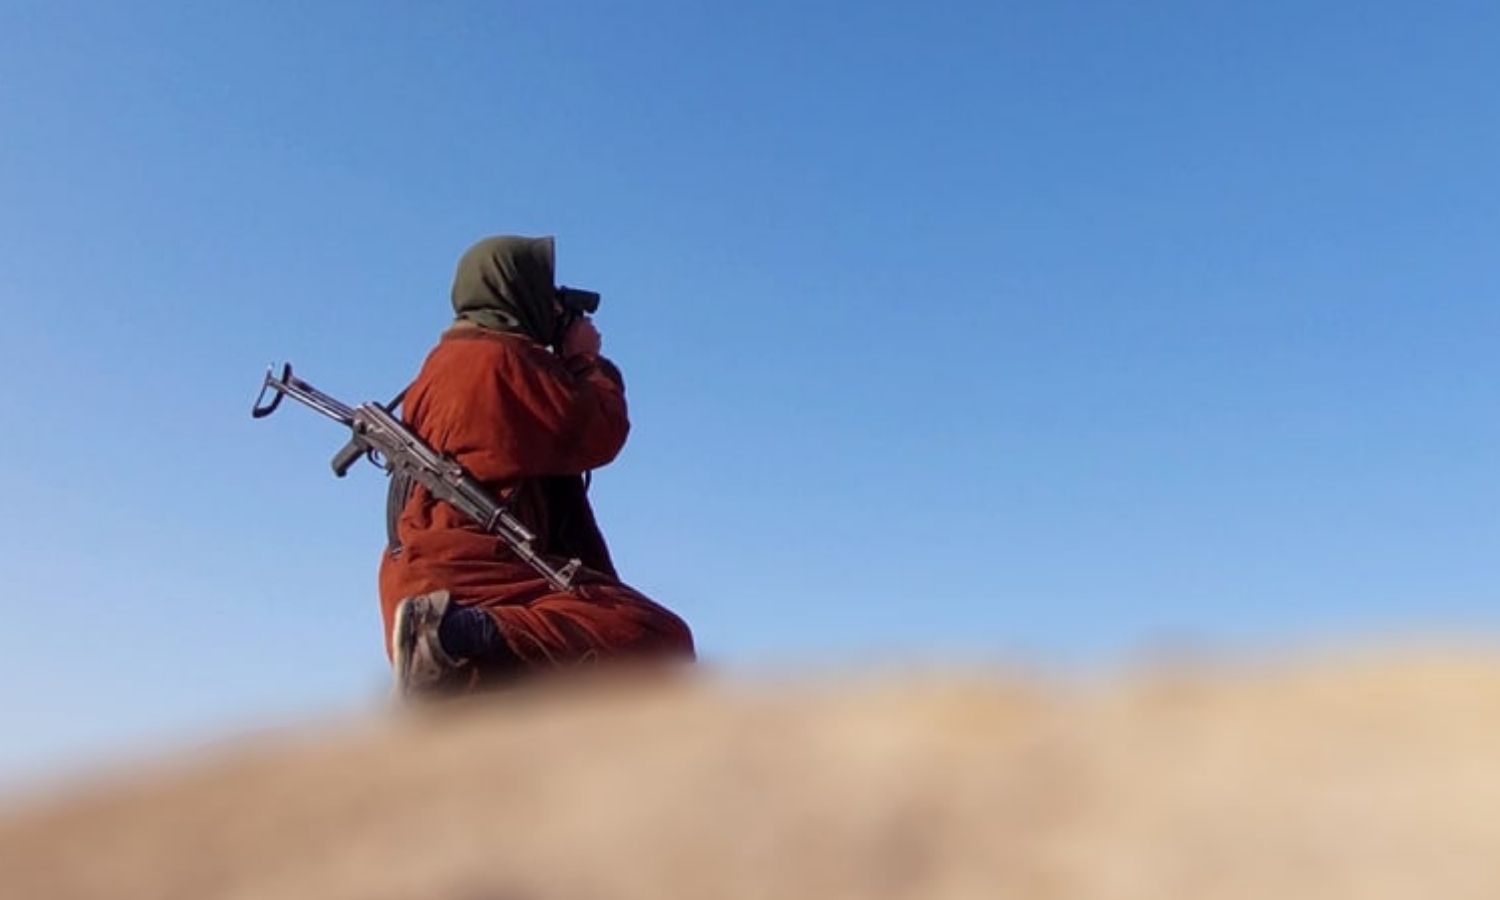 مقاتل في تنظيم "الدولة الإسلامية" في العراق - نيسان 2022 (وكالة ناشر/ تلجرام)